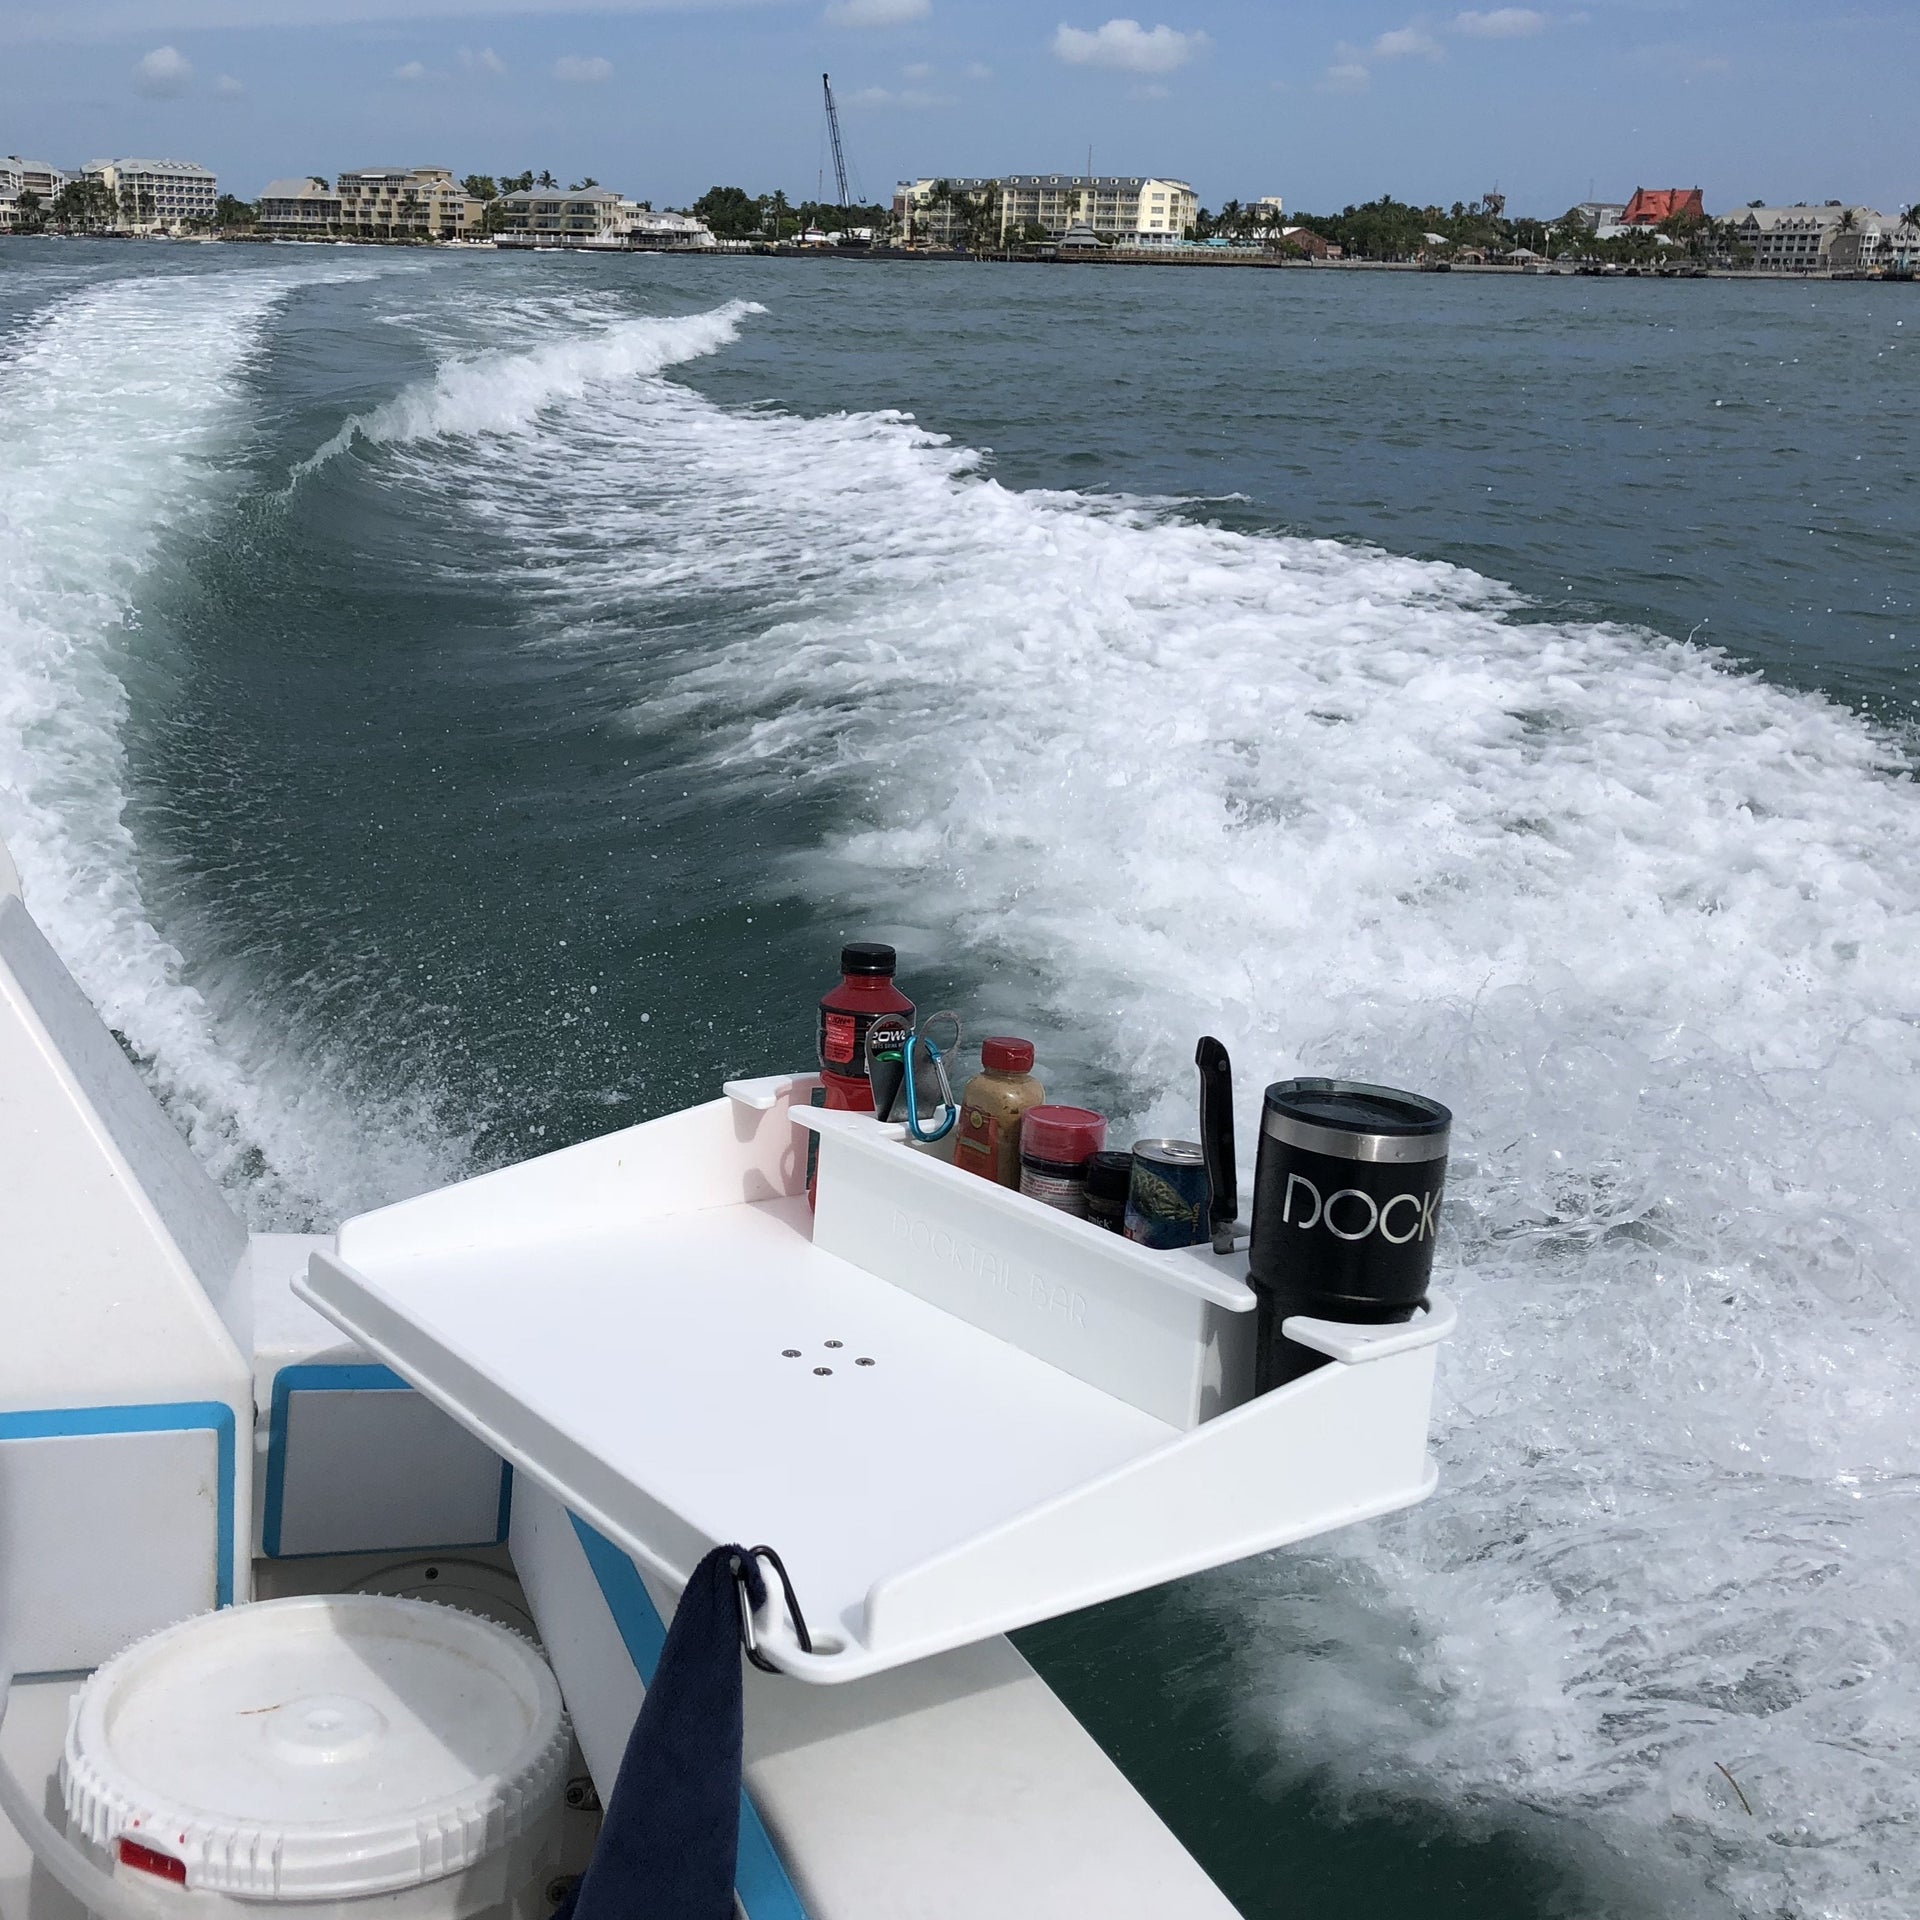 Docktail Food & Beverage Bar - My Boat Life